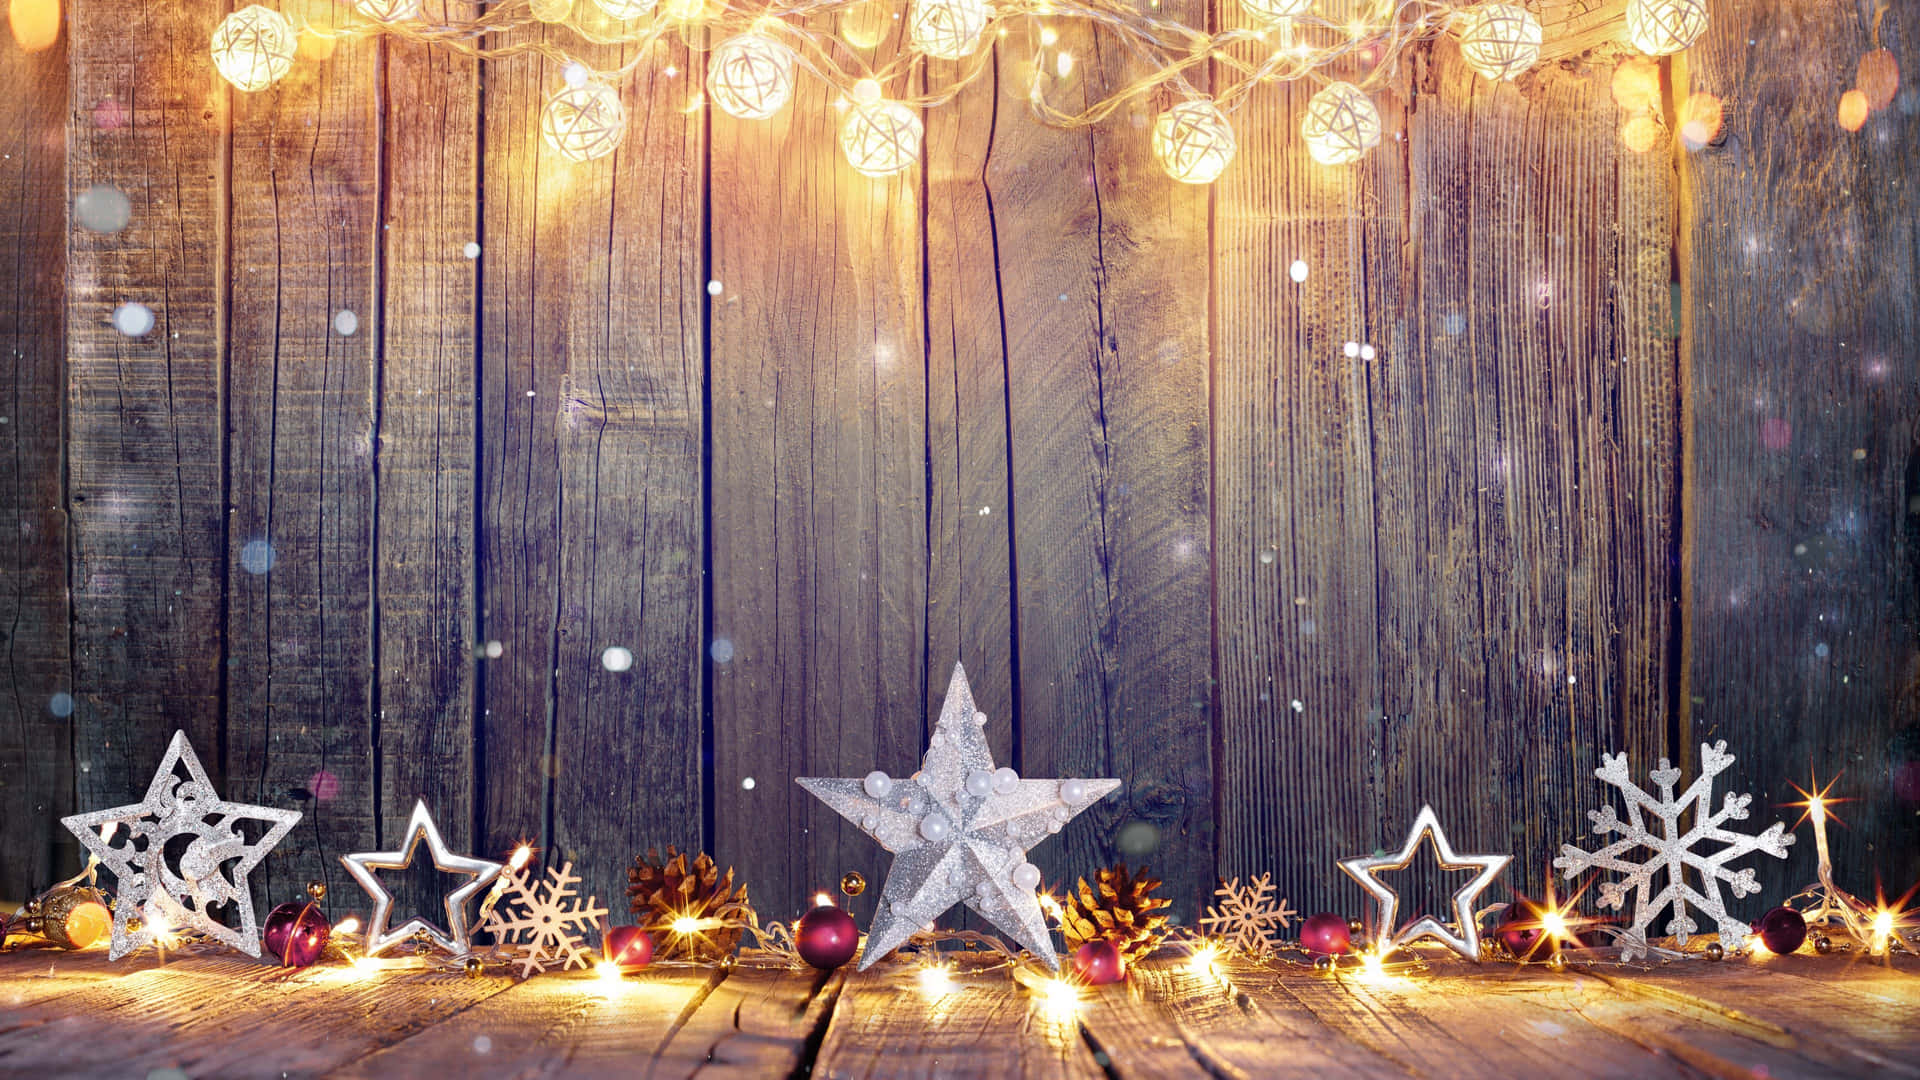 Hãy tải ngay những bức ảnh nền máy tính Giáng sinh độ phân giải cao Silver Stars để cùng chào đón mùa lễ hội đong đầy sắc màu và ấm áp. Bạn sẽ được khám phá những hình ảnh tuyệt đẹp của Giáng sinh, mang đến cho bạn không gian làm việc và giải trí đầy phấn khích và thanh tịnh.